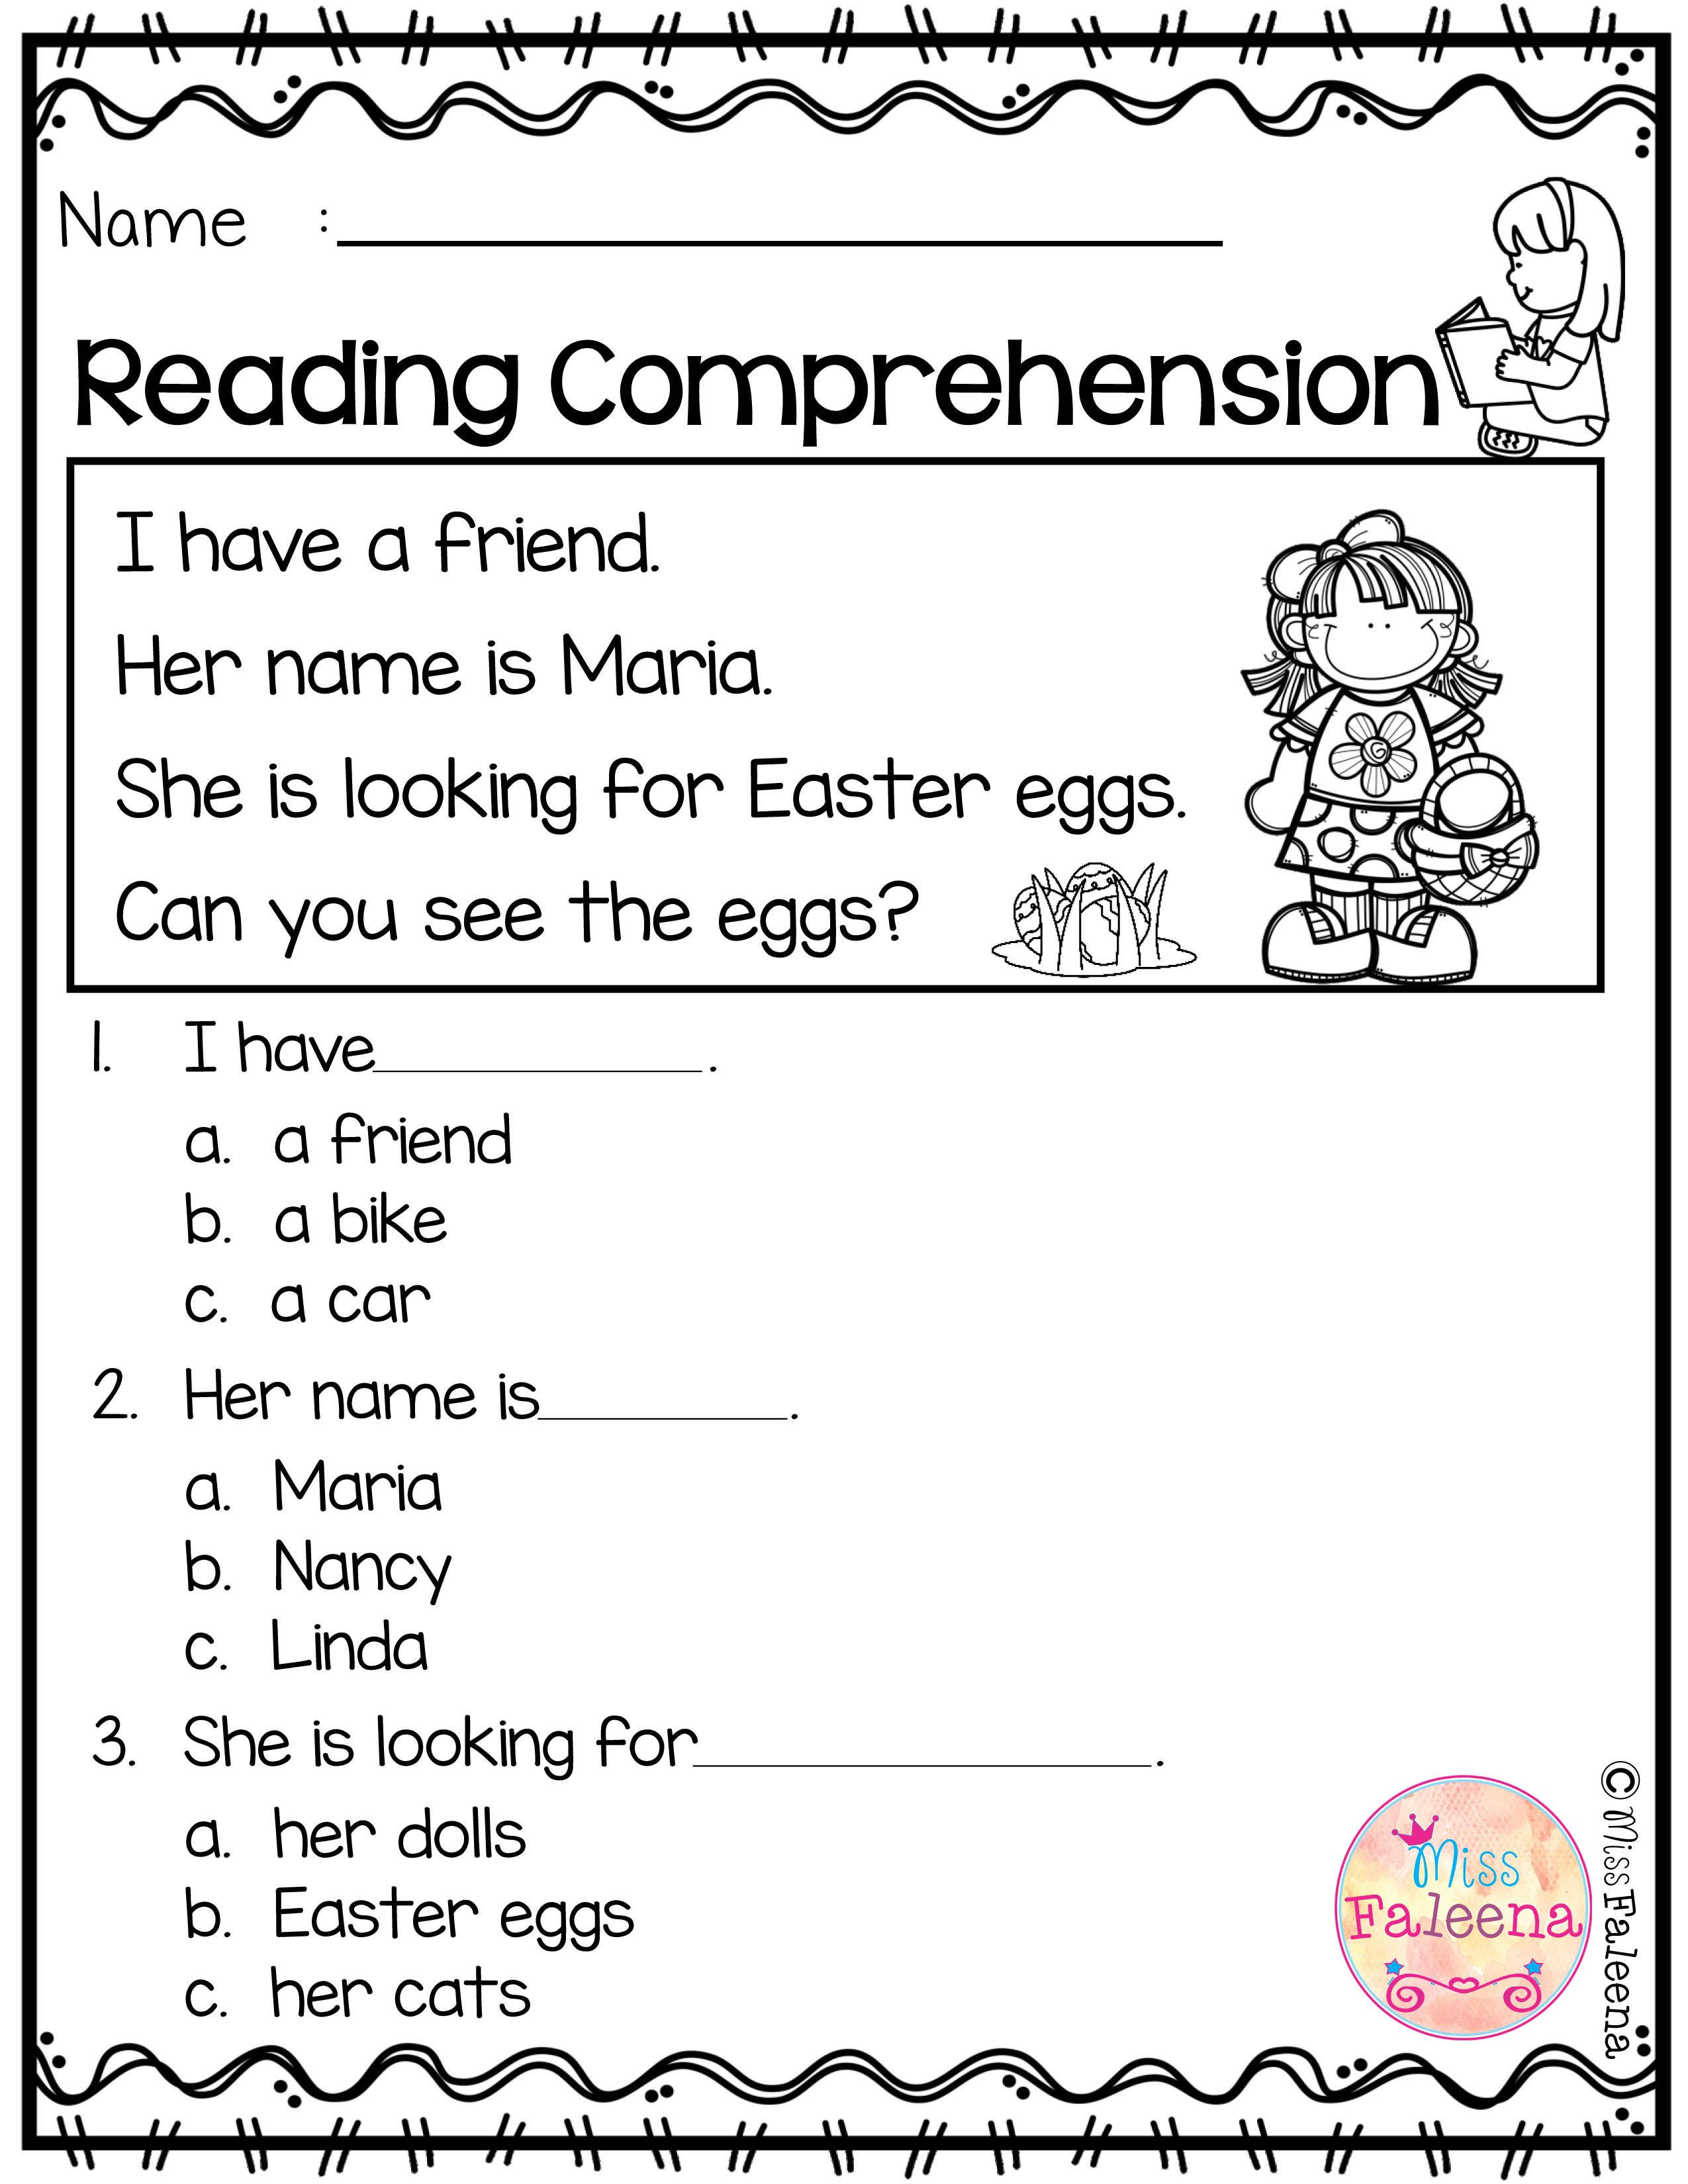 Comprehension Worksheets for Kindergarten Free Reading Prehension